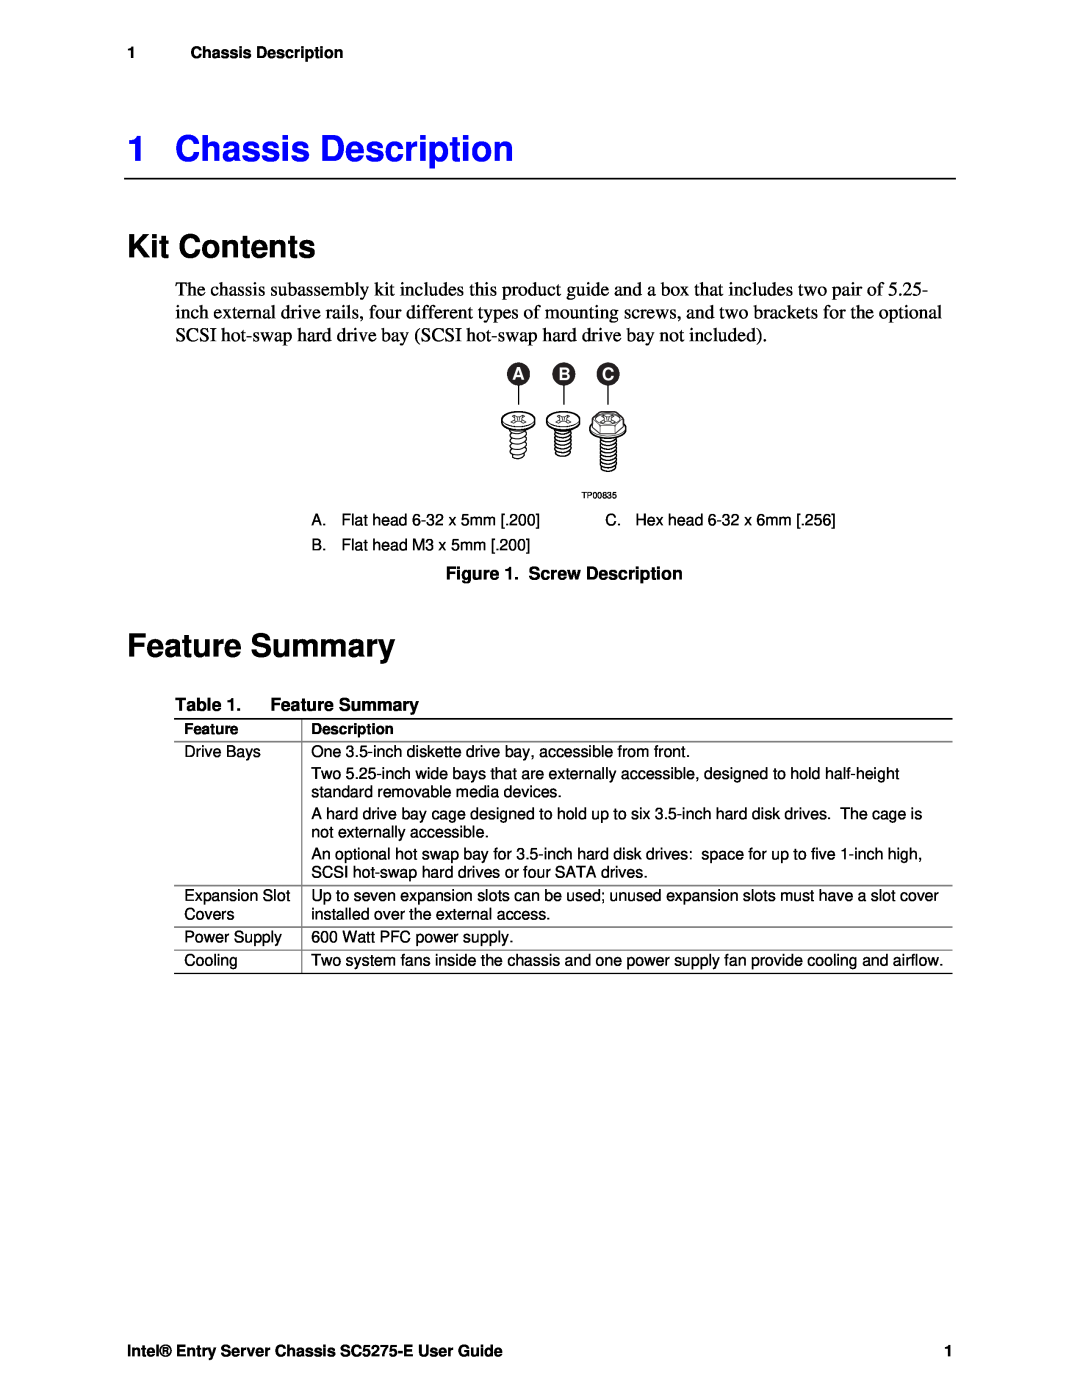 Intel C50277-001, SC5275-E manual Chassis Description, Kit Contents, Feature Summary, A B C, Screw Description 